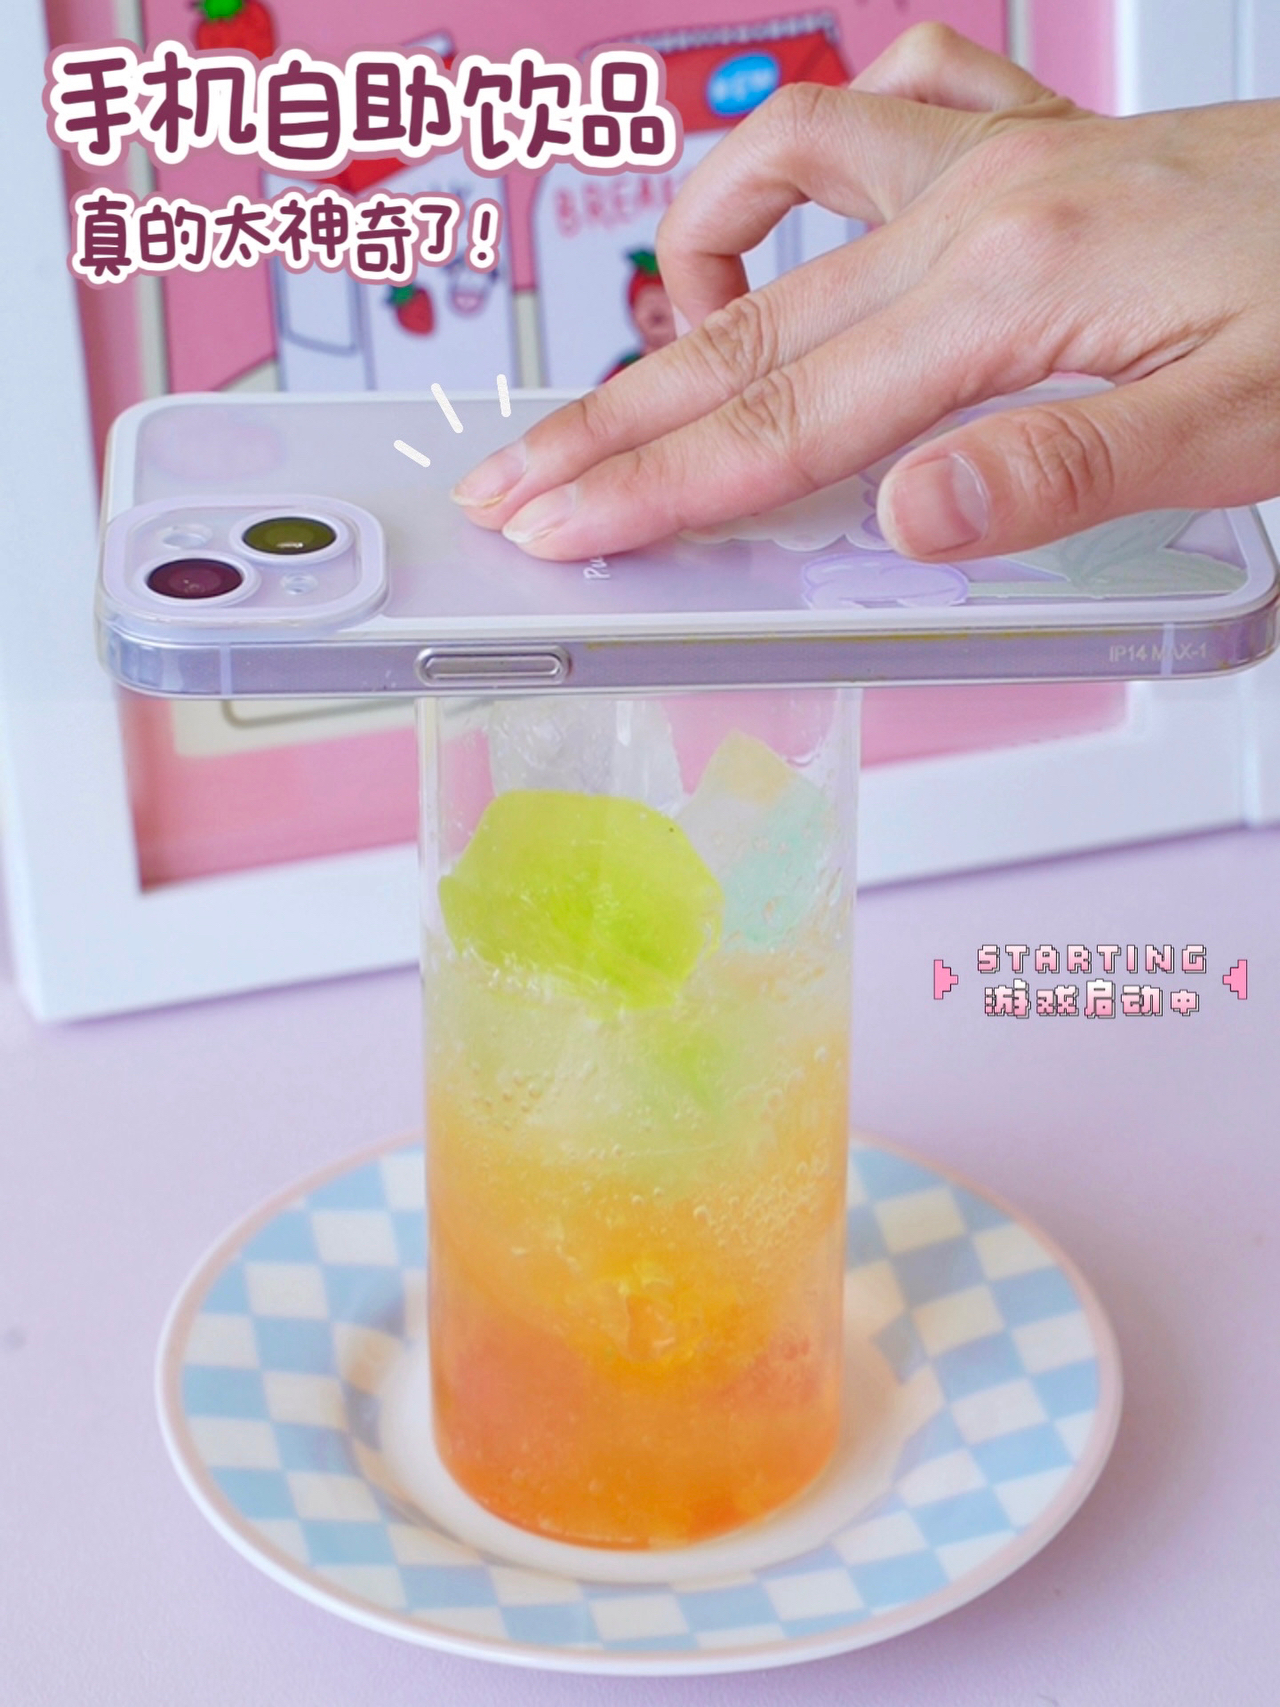 太神奇了‼️手机自助饮品🔥彩虹气泡水🌈